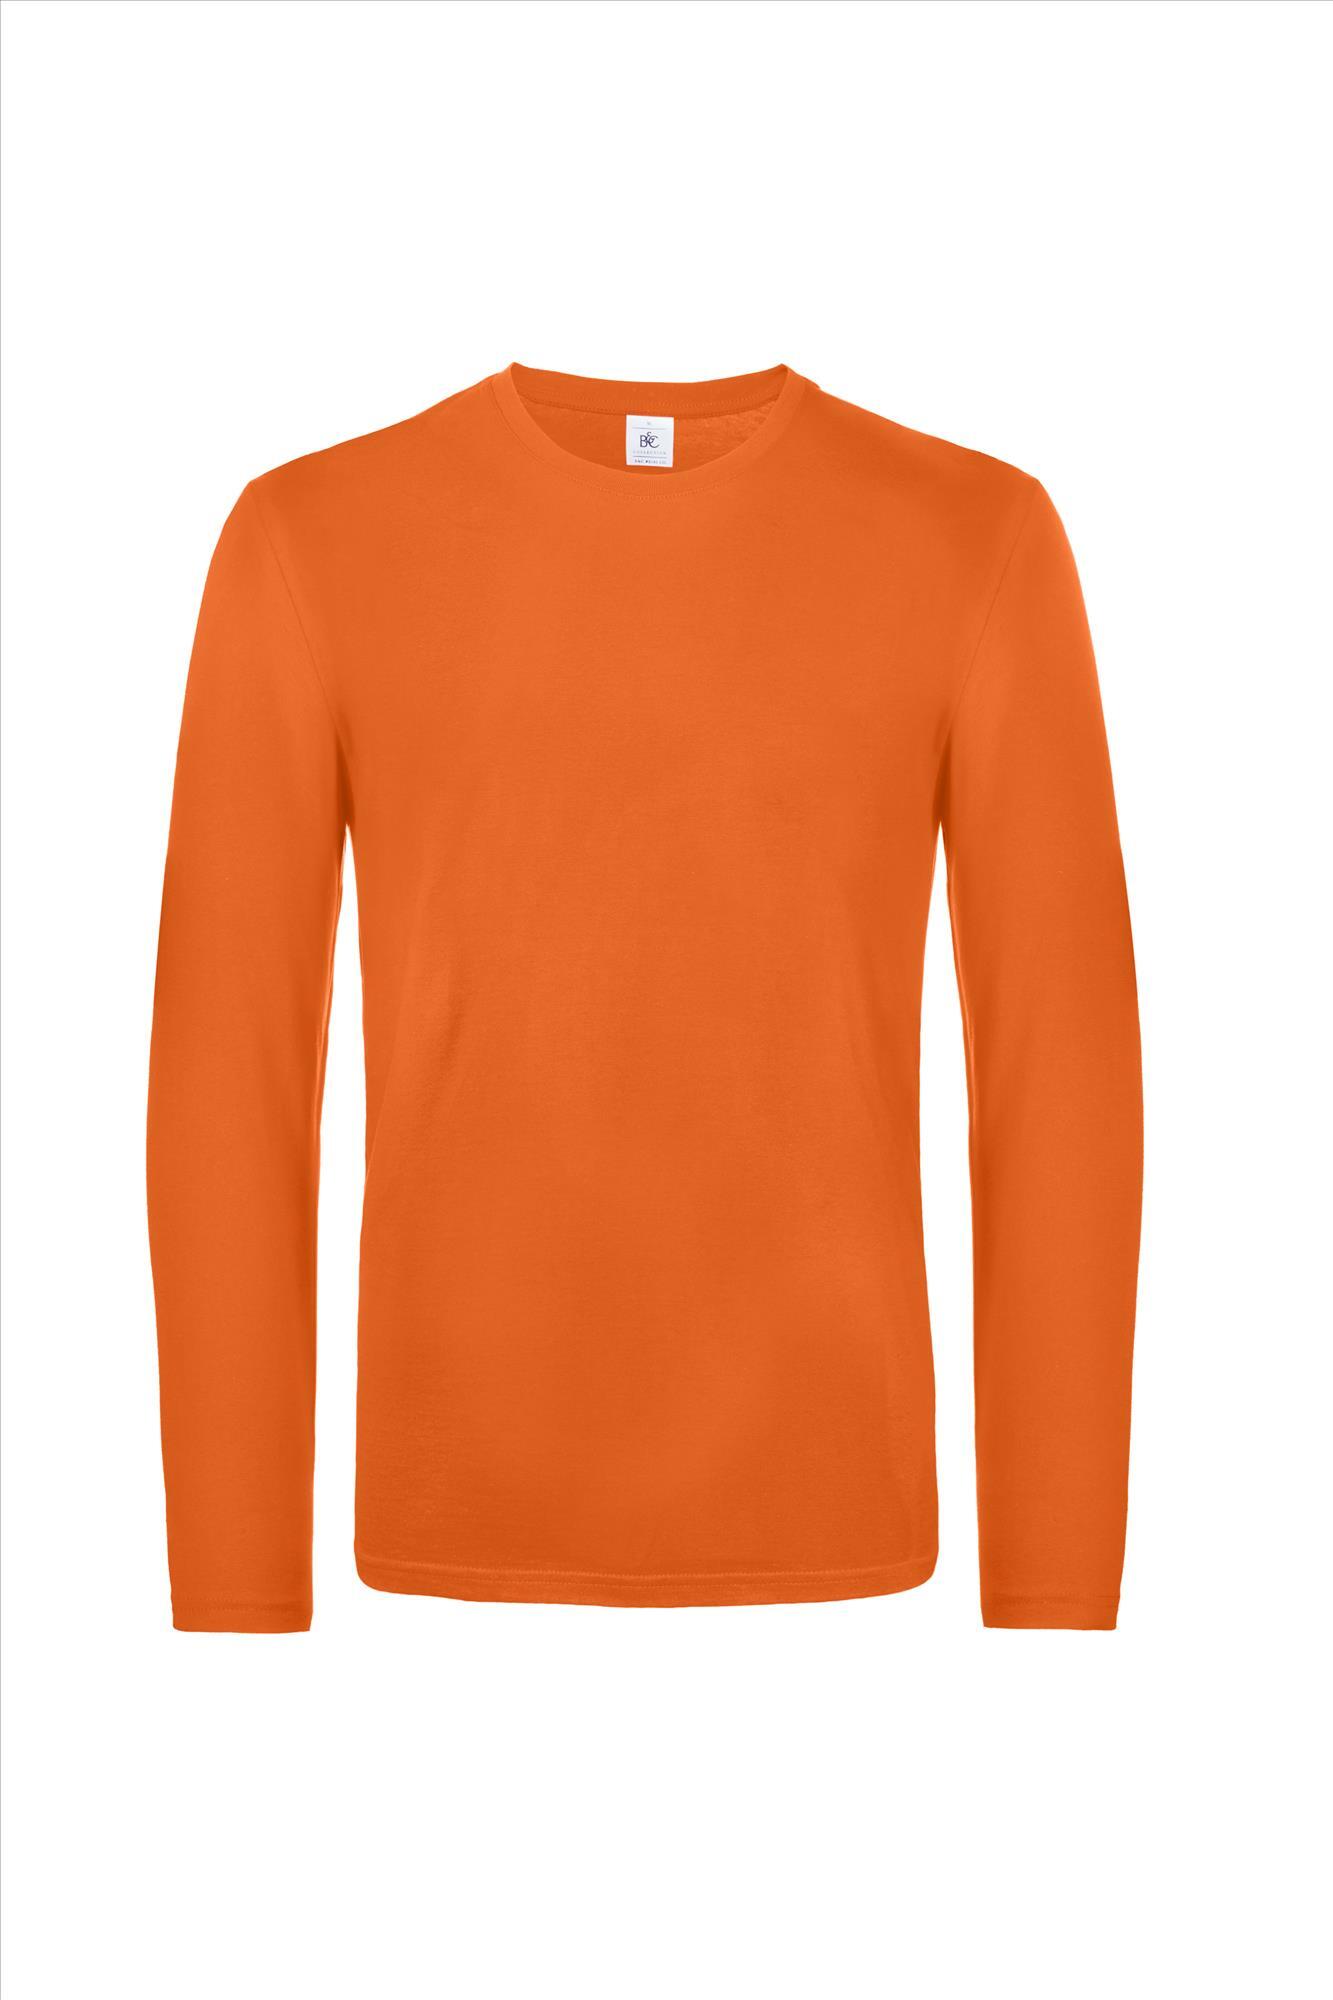 Modern zware kwaliteit heren T-shirt met lange mouwen urban oranje te personaliseren